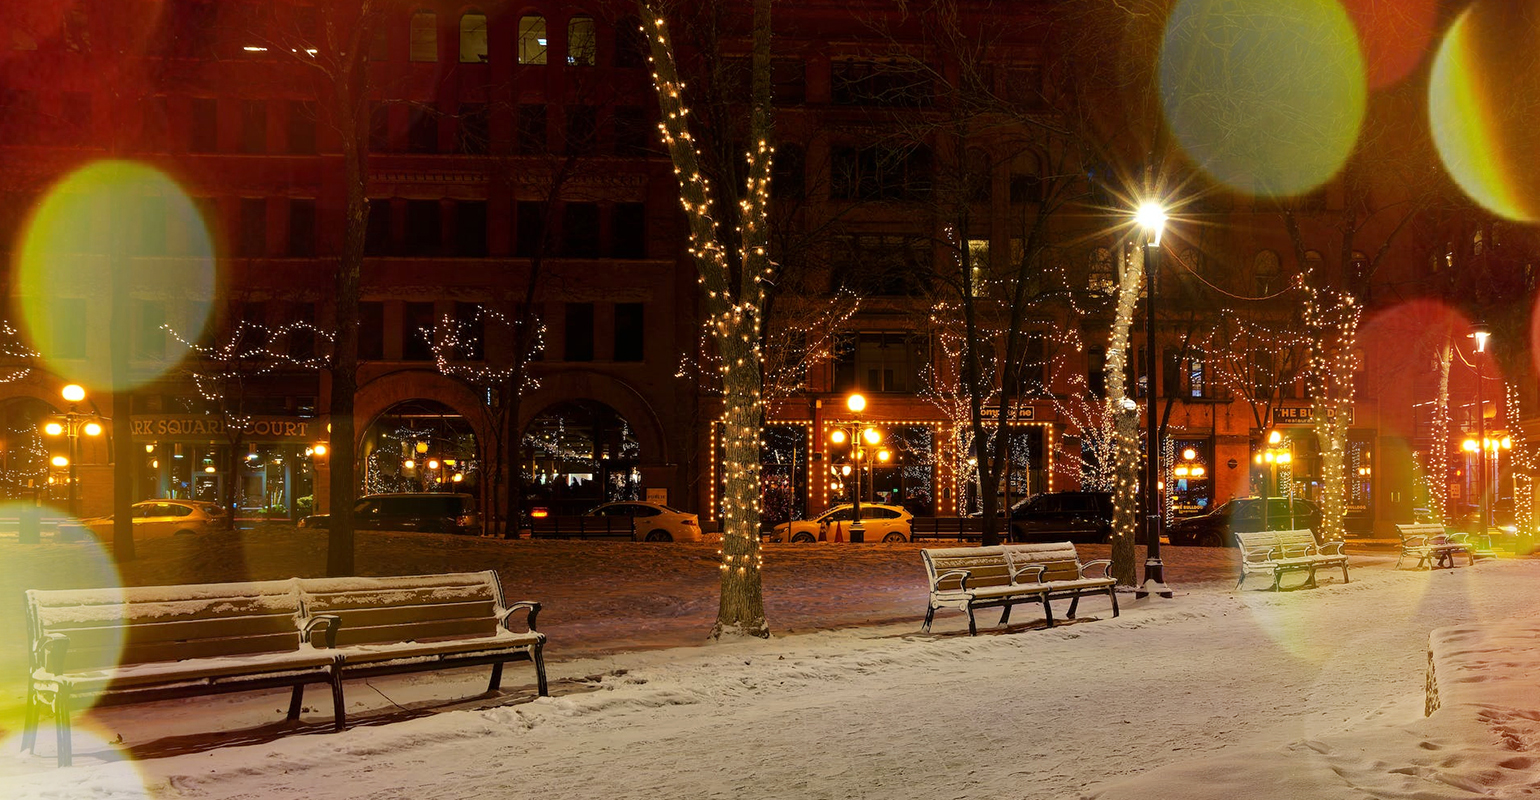 Scena notturna di strada alla vigilia di Natale con fotor effetto fotografico natalizio